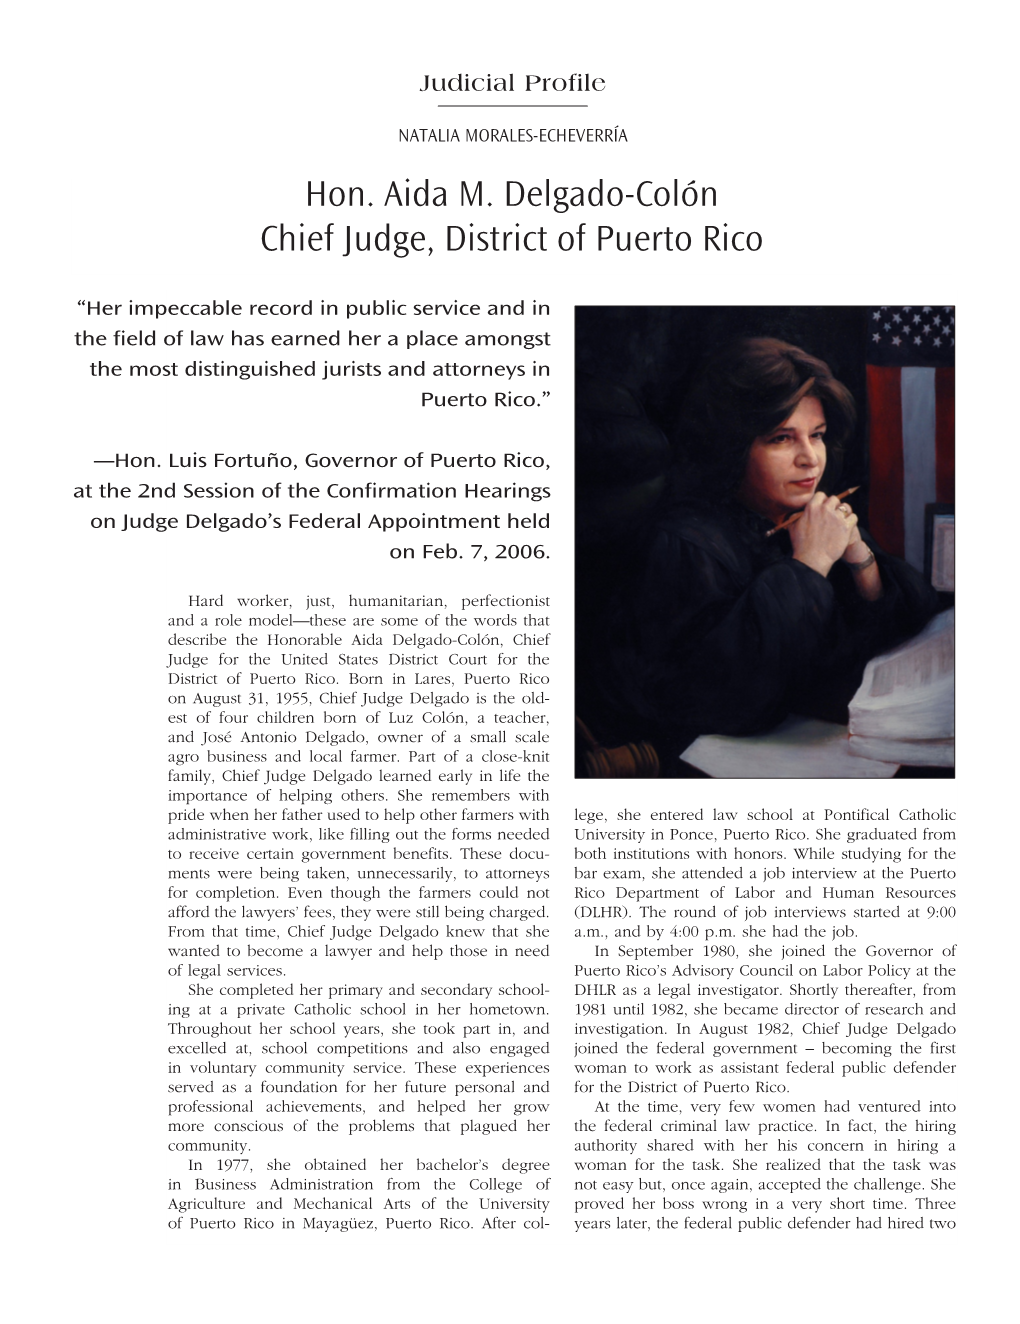 Hon. Aida M. Delgado-Colón Chief Judge, District of Puerto Rico